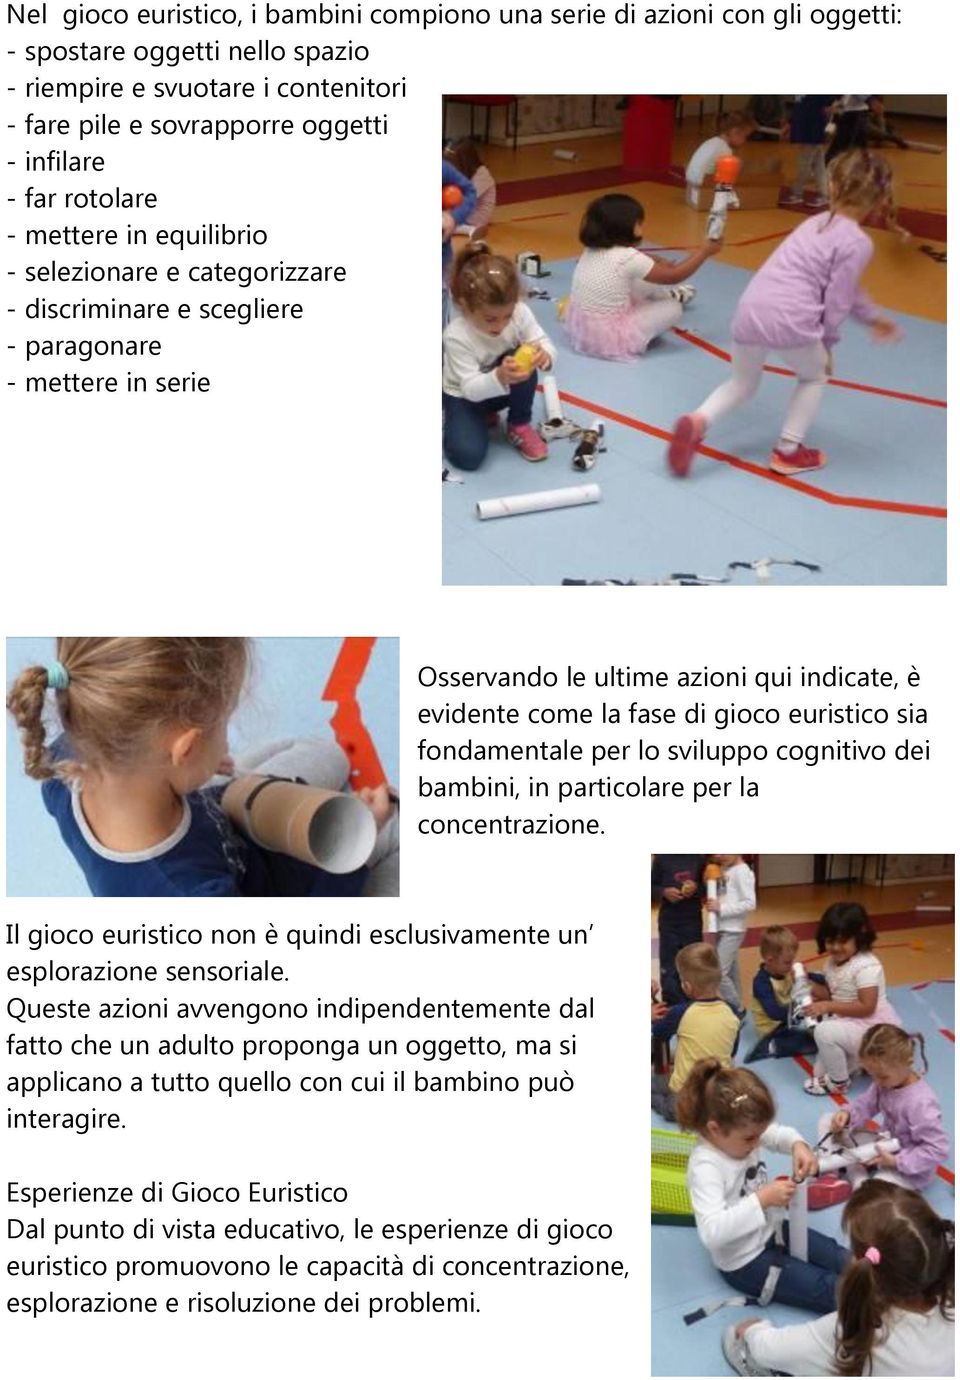 euristico sia fondamentale per lo sviluppo cognitivo dei bambini, in particolare per la concentrazione. Il gioco euristico non è quindi esclusivamente un esplorazione sensoriale.